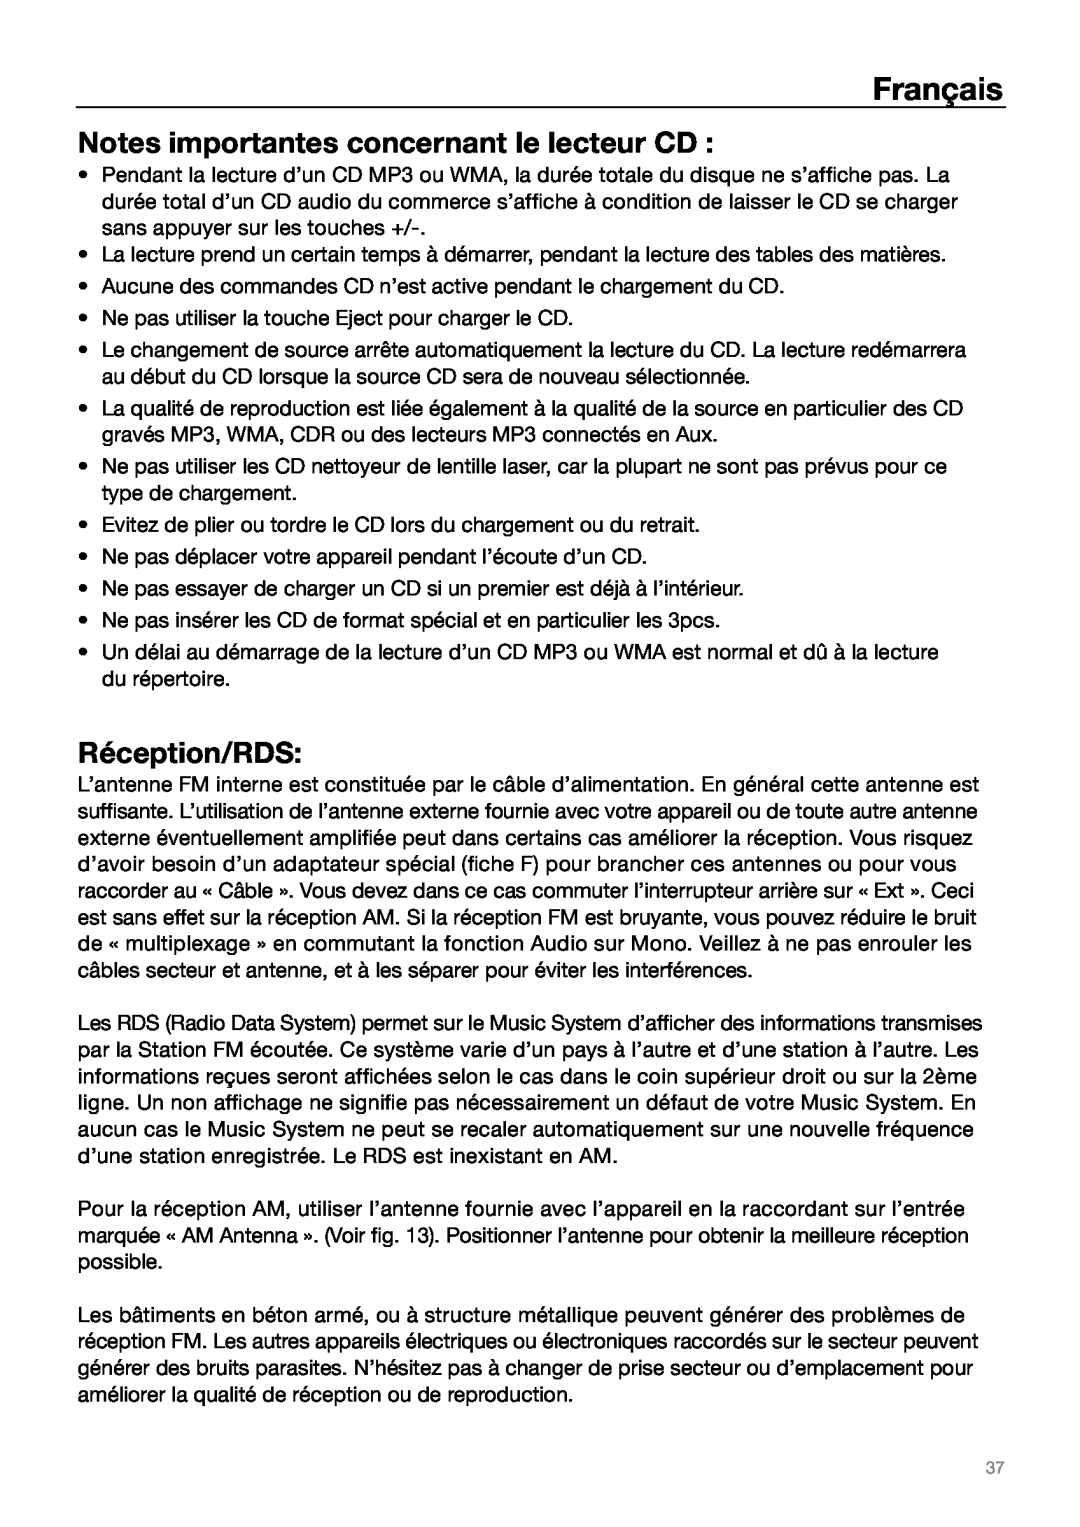 Tivoli Audio MUSIC SYSTEM owner manual Notes importantes concernant le lecteur CD, Réception/RDS, Français 